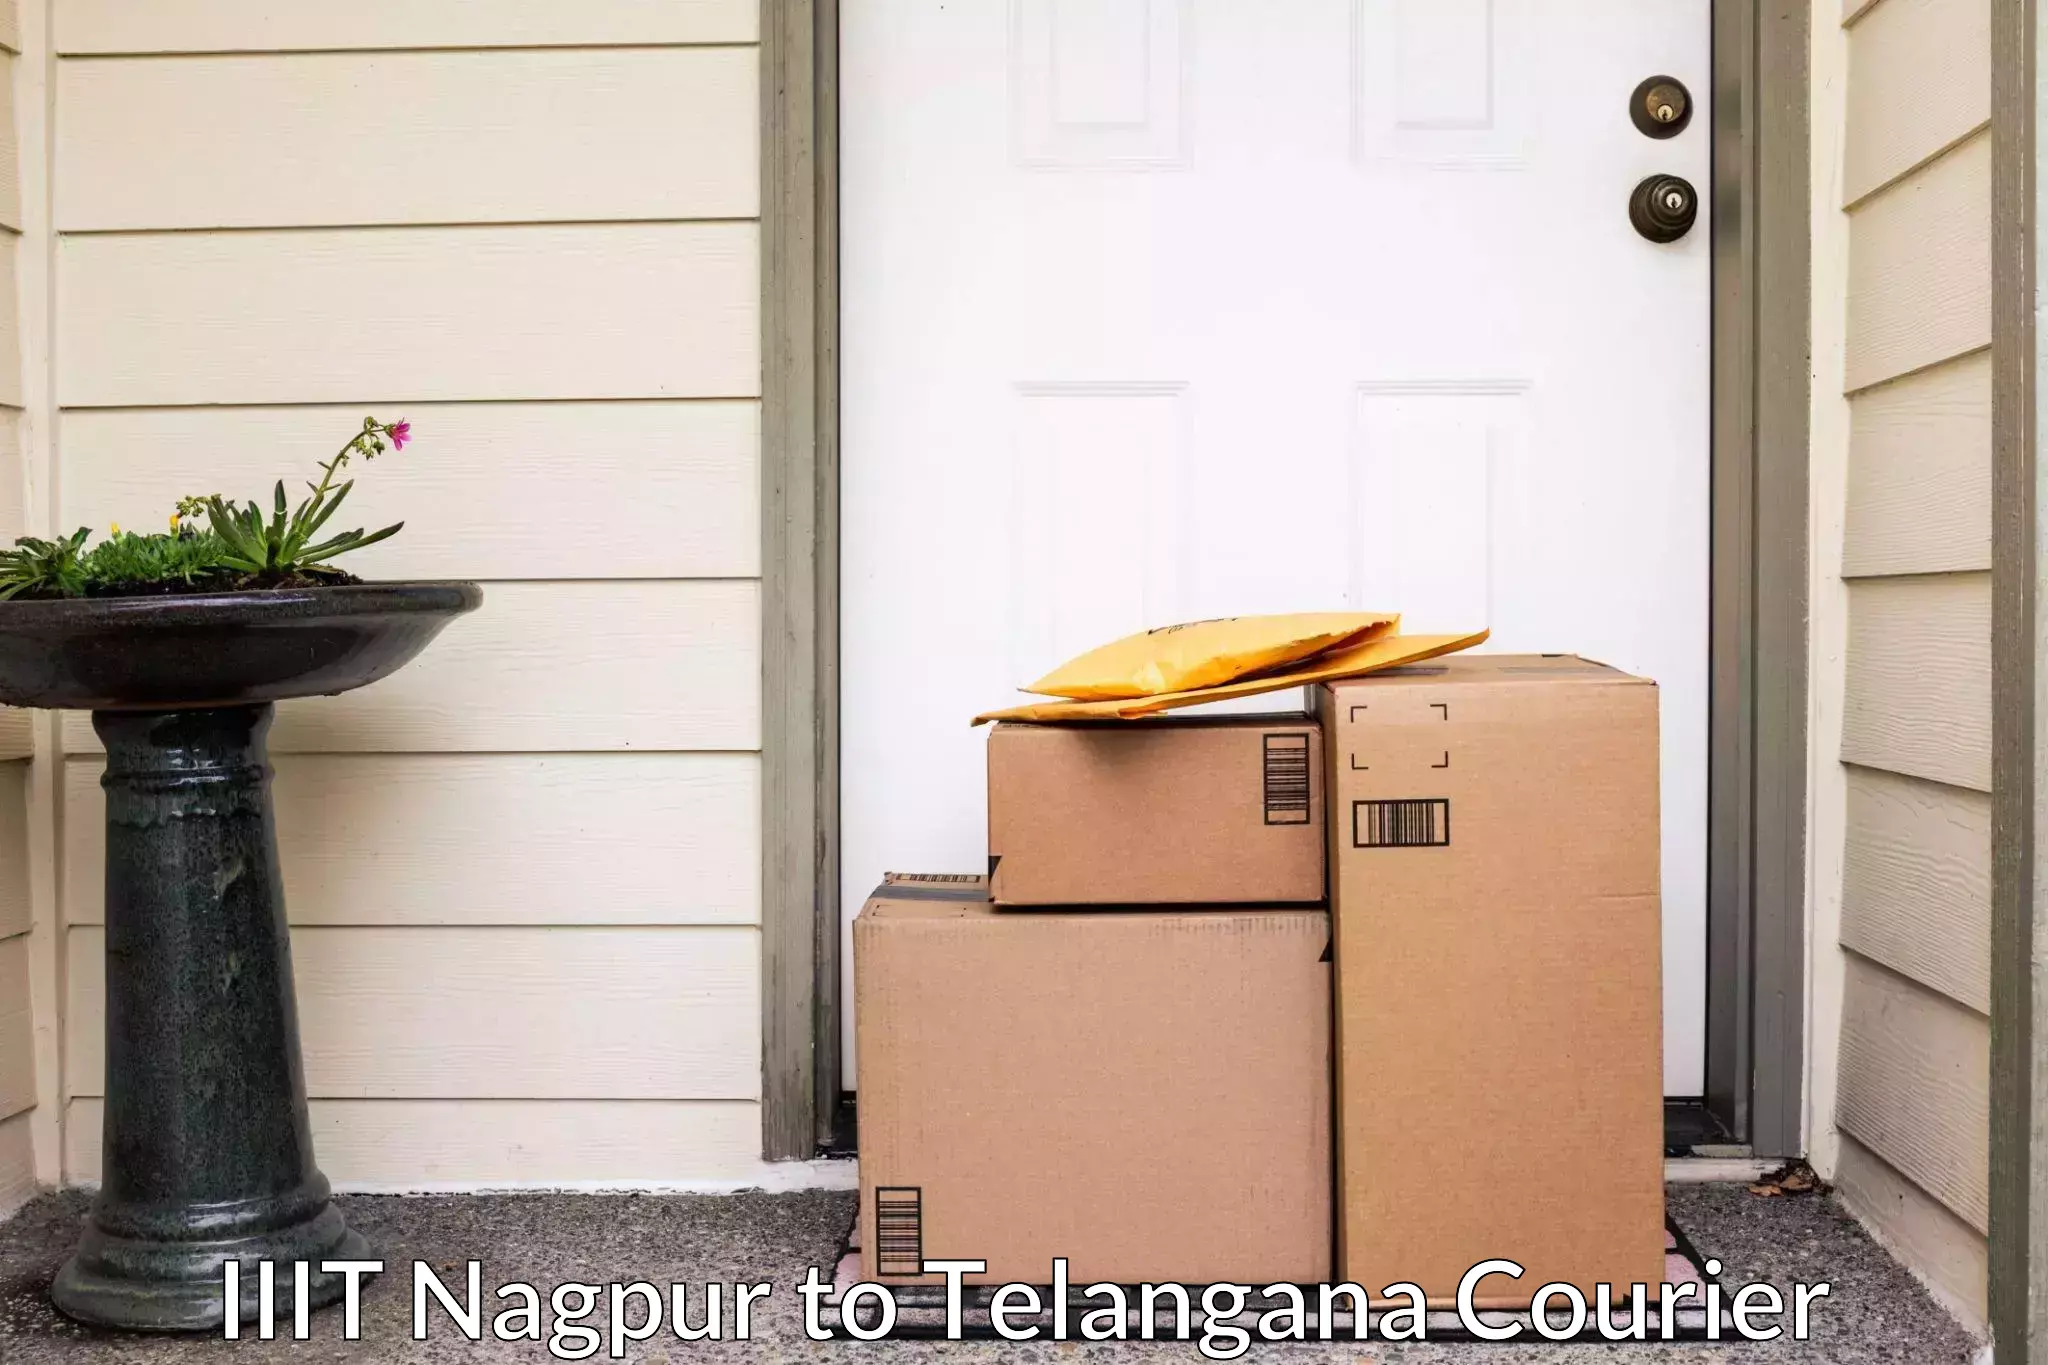 Stress-free household shifting IIIT Nagpur to Yerrupalem